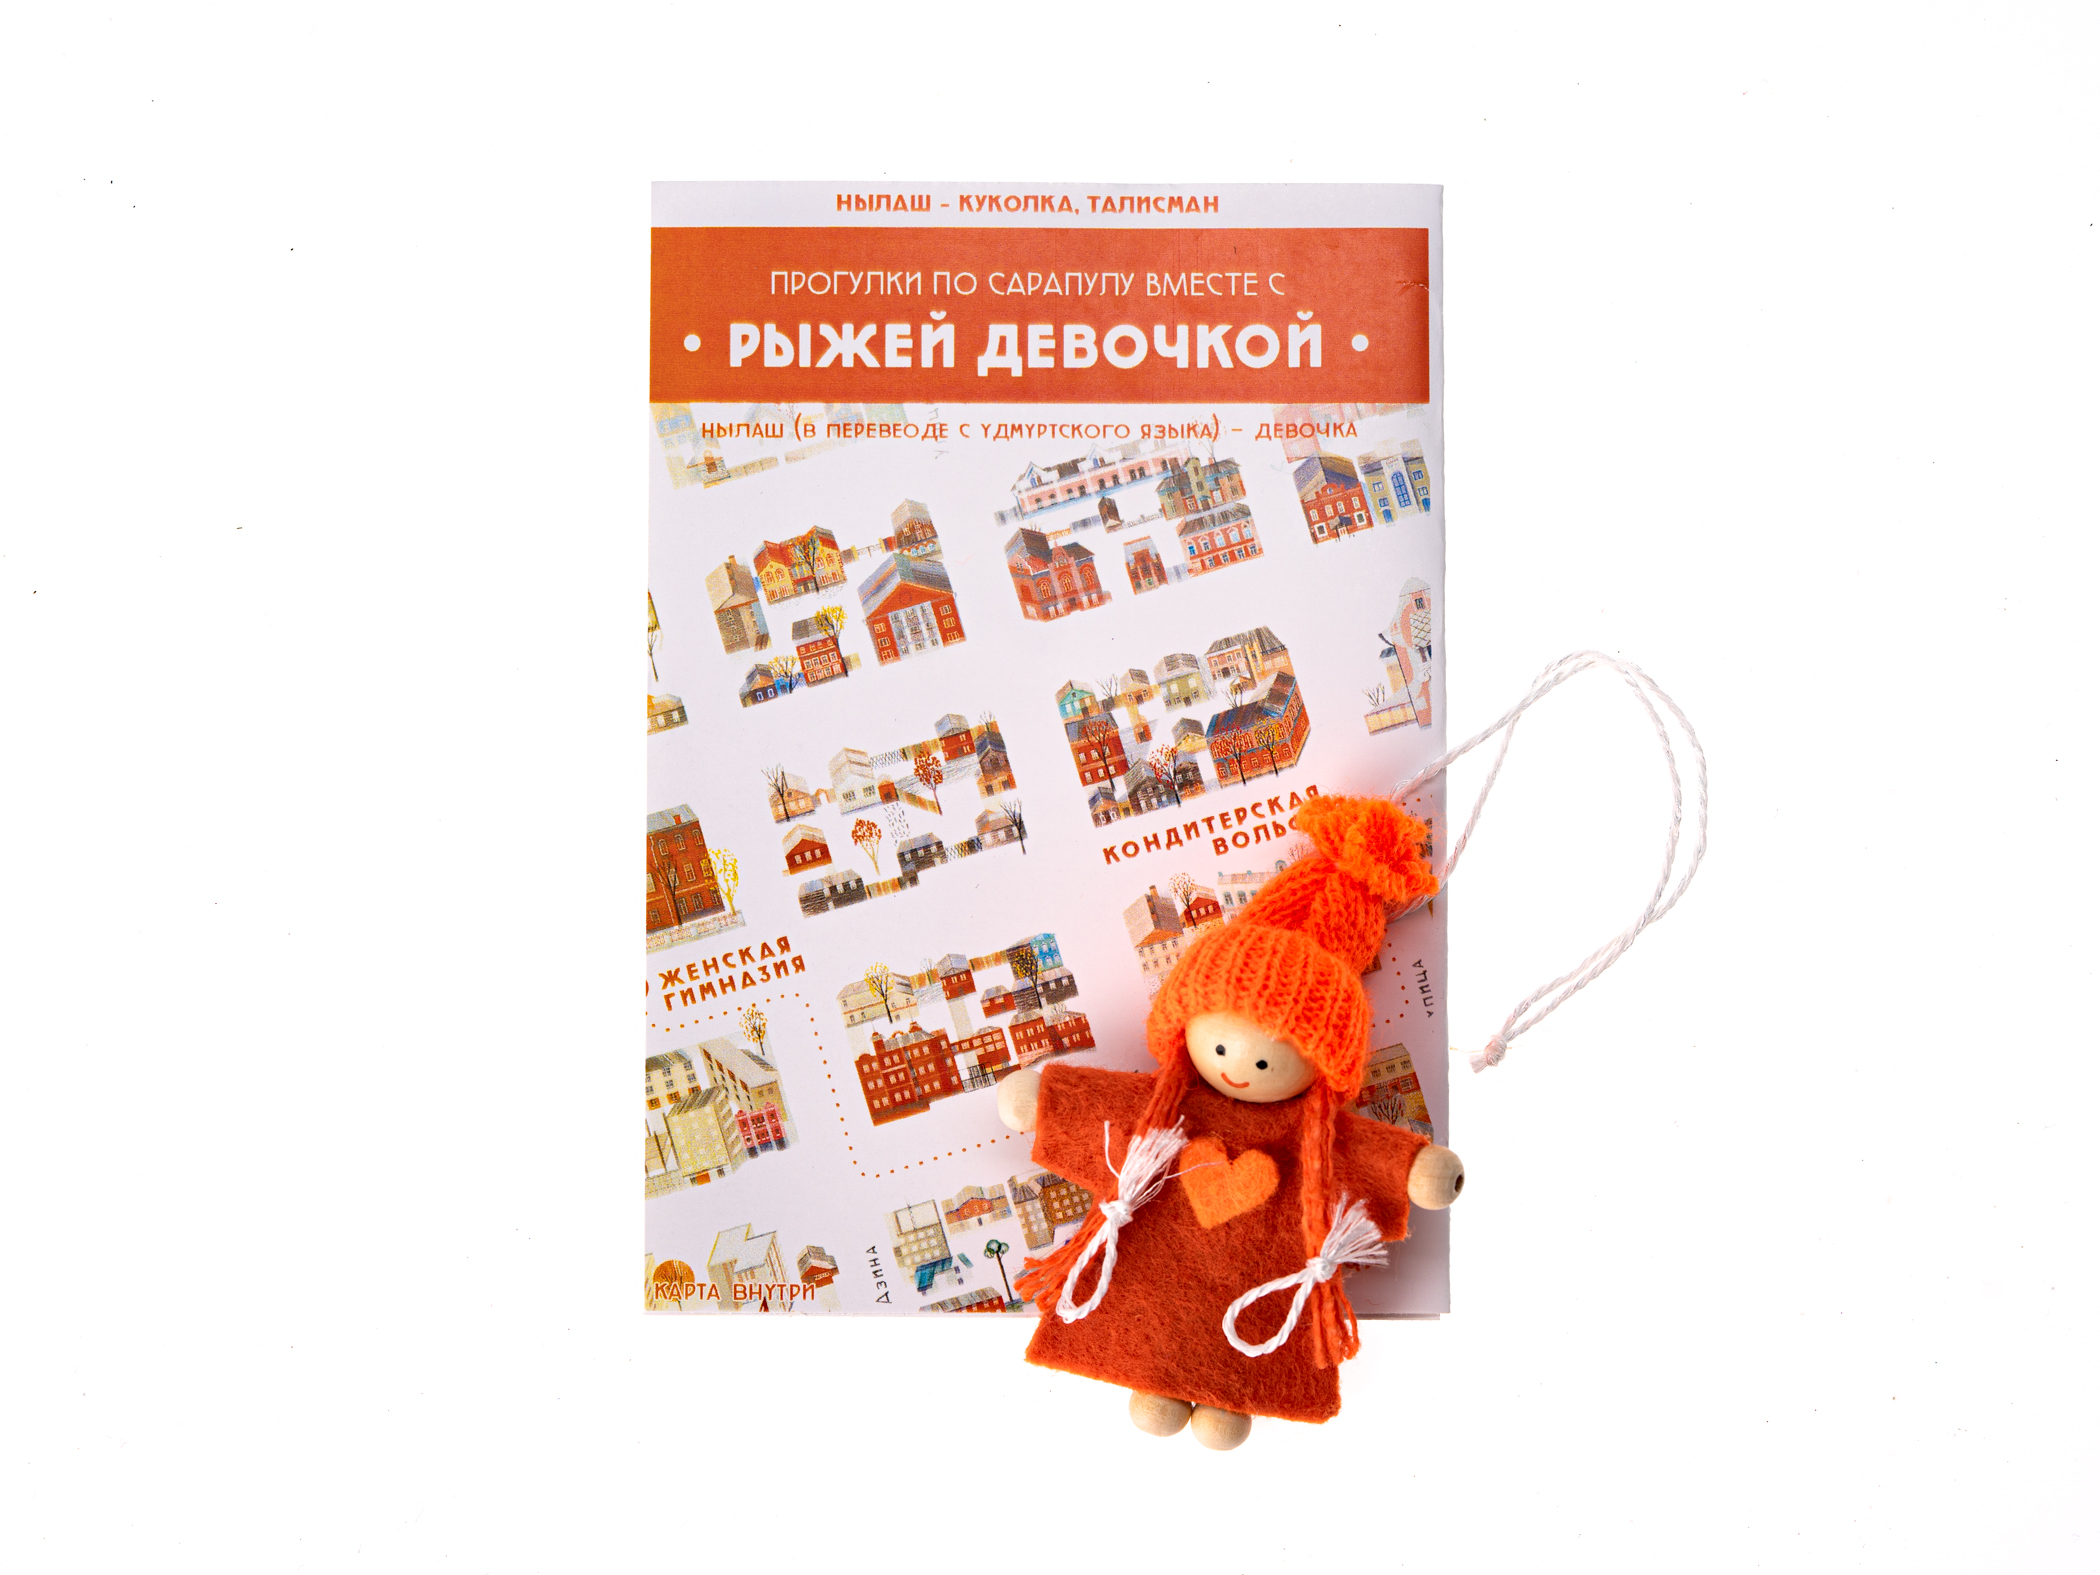 НЫЛАШ - удмуртская куколка "Рыжая девочка" с картой г. Сарапул